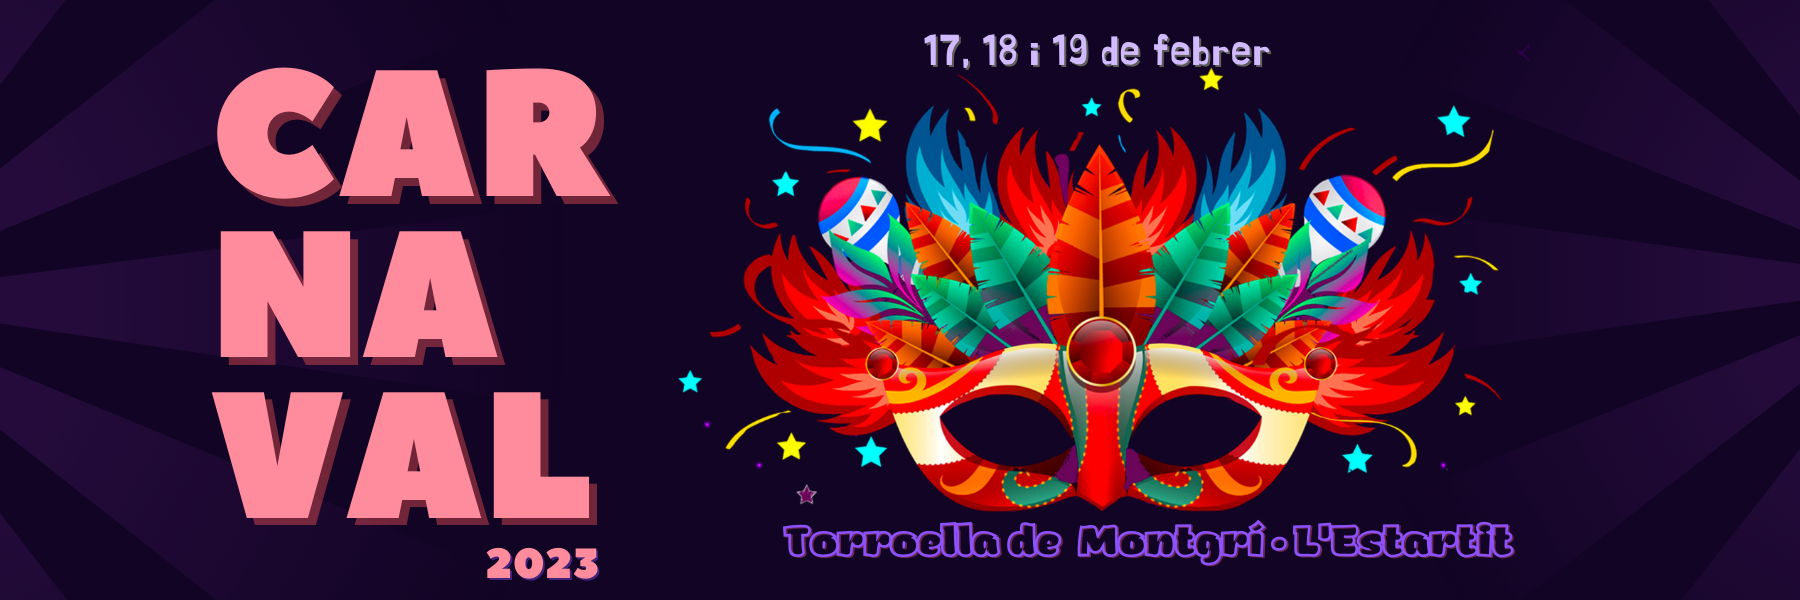 Bàner del carnaval 2023 amb una màscara, les lletres Carnaval i els dies que es celebra la festa